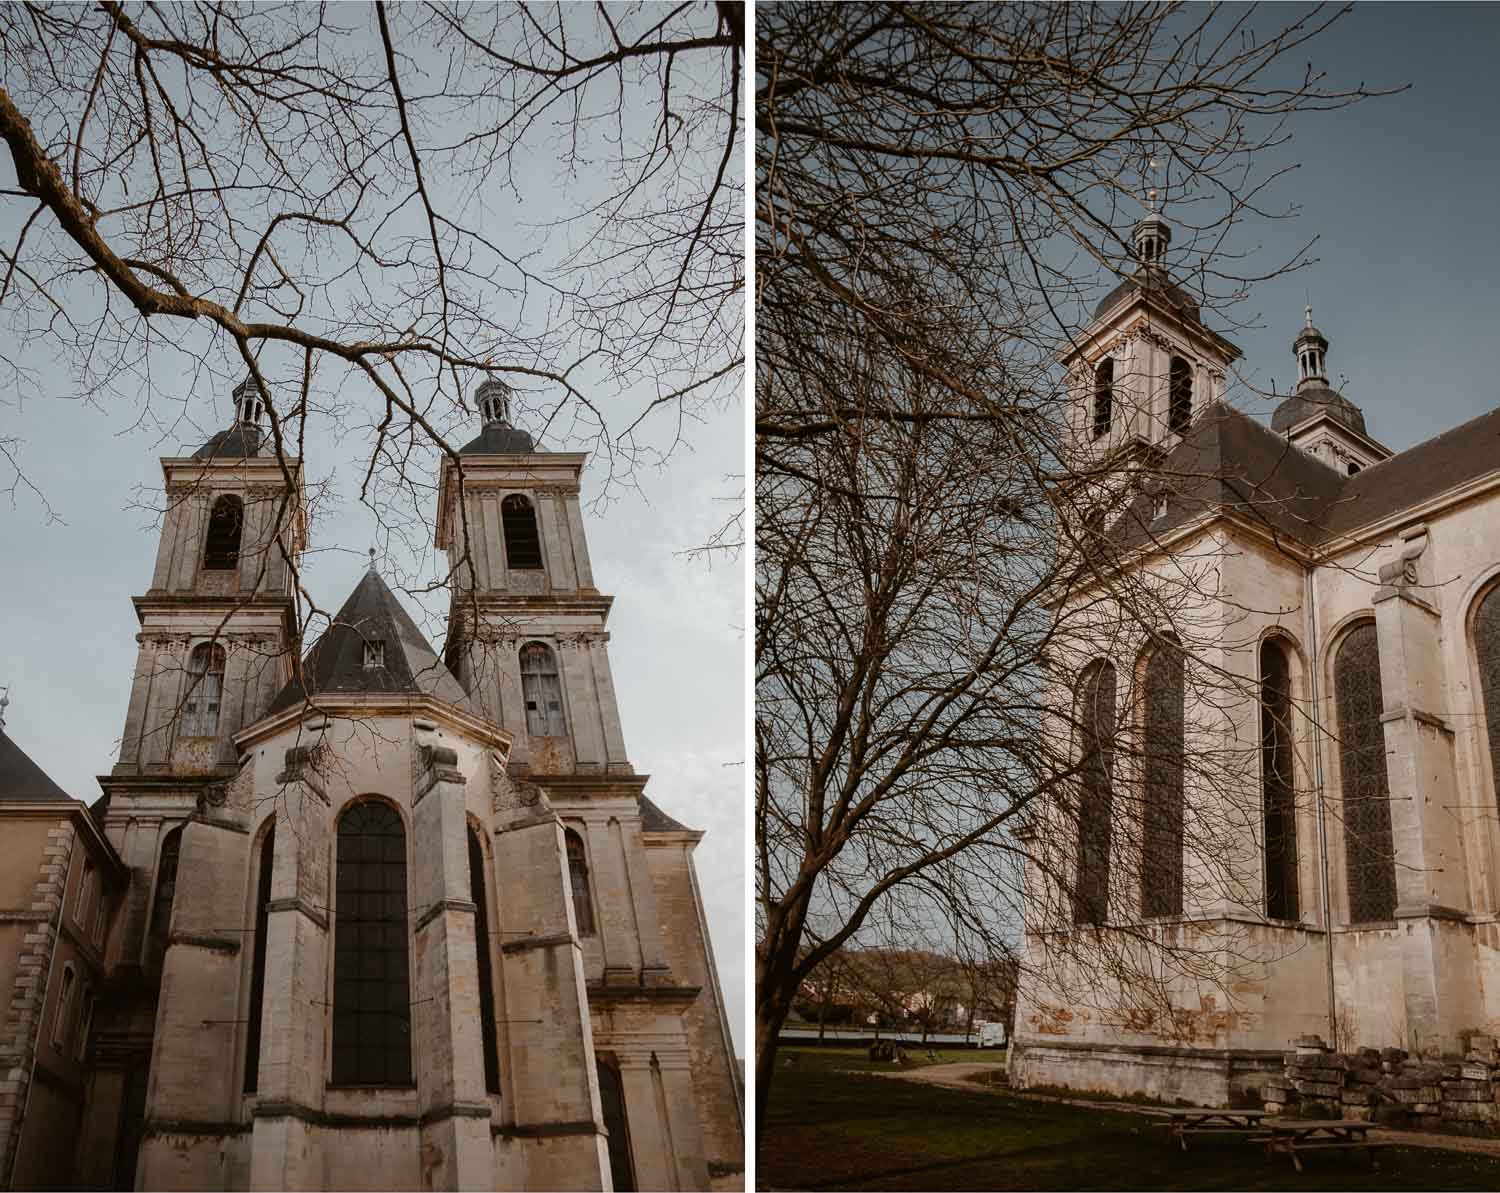 photographies d’un mariage chic d’hiver à l’Abbaye des Prémontrés de Pont-à-Mousson en Meurthe-et-Moselle